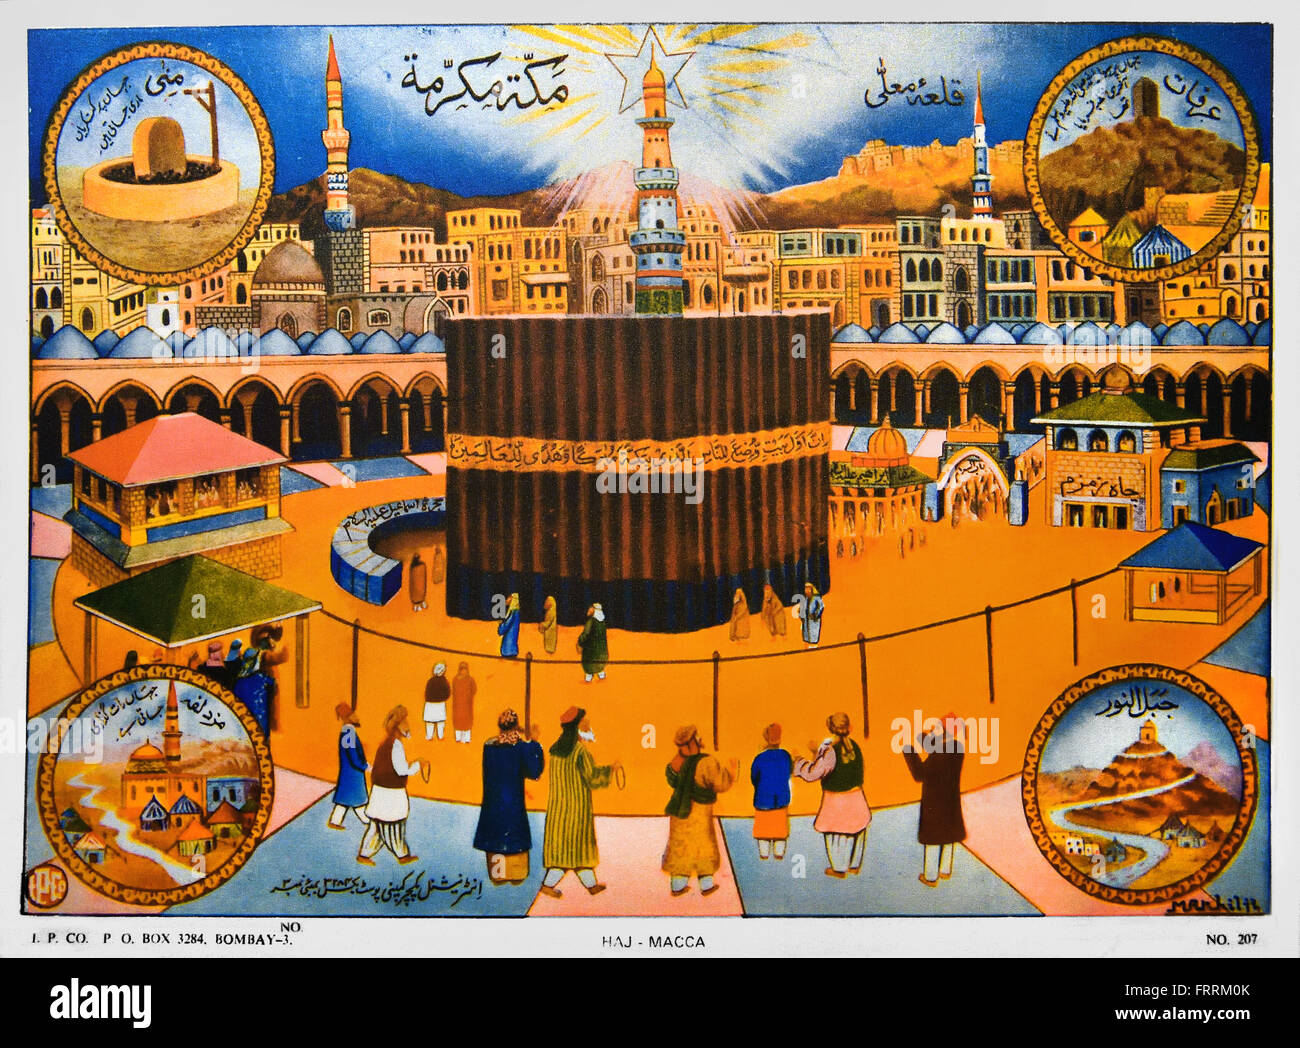 Stampa raffigurante il Ka'aba ( Kaaba ) alla Mecca 1930-1950 India indiano ( immagine religiosa della Kaaba, il santuario musulmano della Mecca ) Hejaz in Arabia Saudita Foto Stock